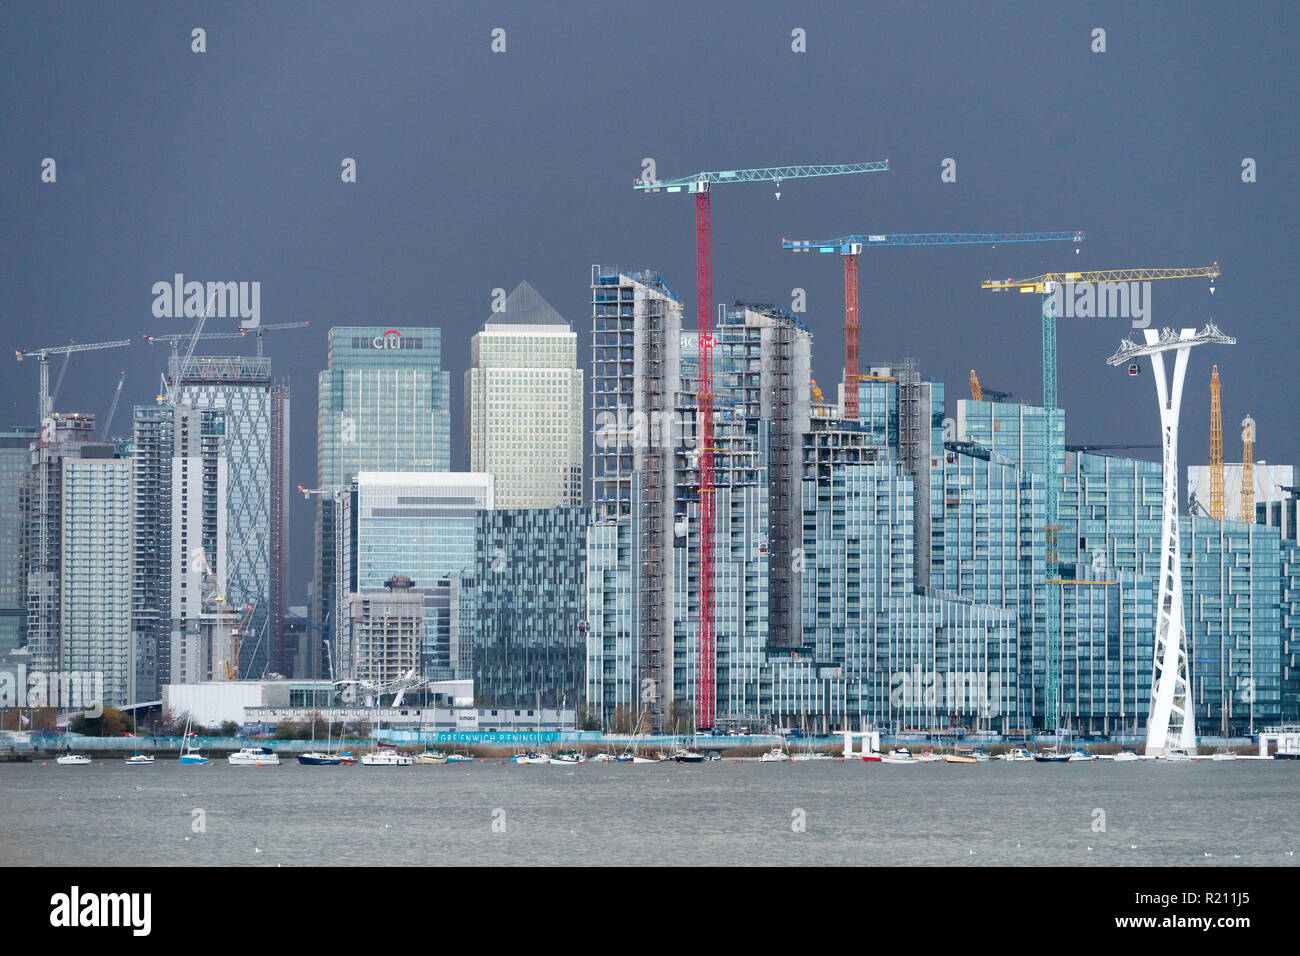 Ein Blick auf das Finanzzentrum Canary Wharf in London. Von der offenen Stadt Thames Architektur Tour Ost. Foto Datum: Samstag, 10. November, 20. Stockfoto